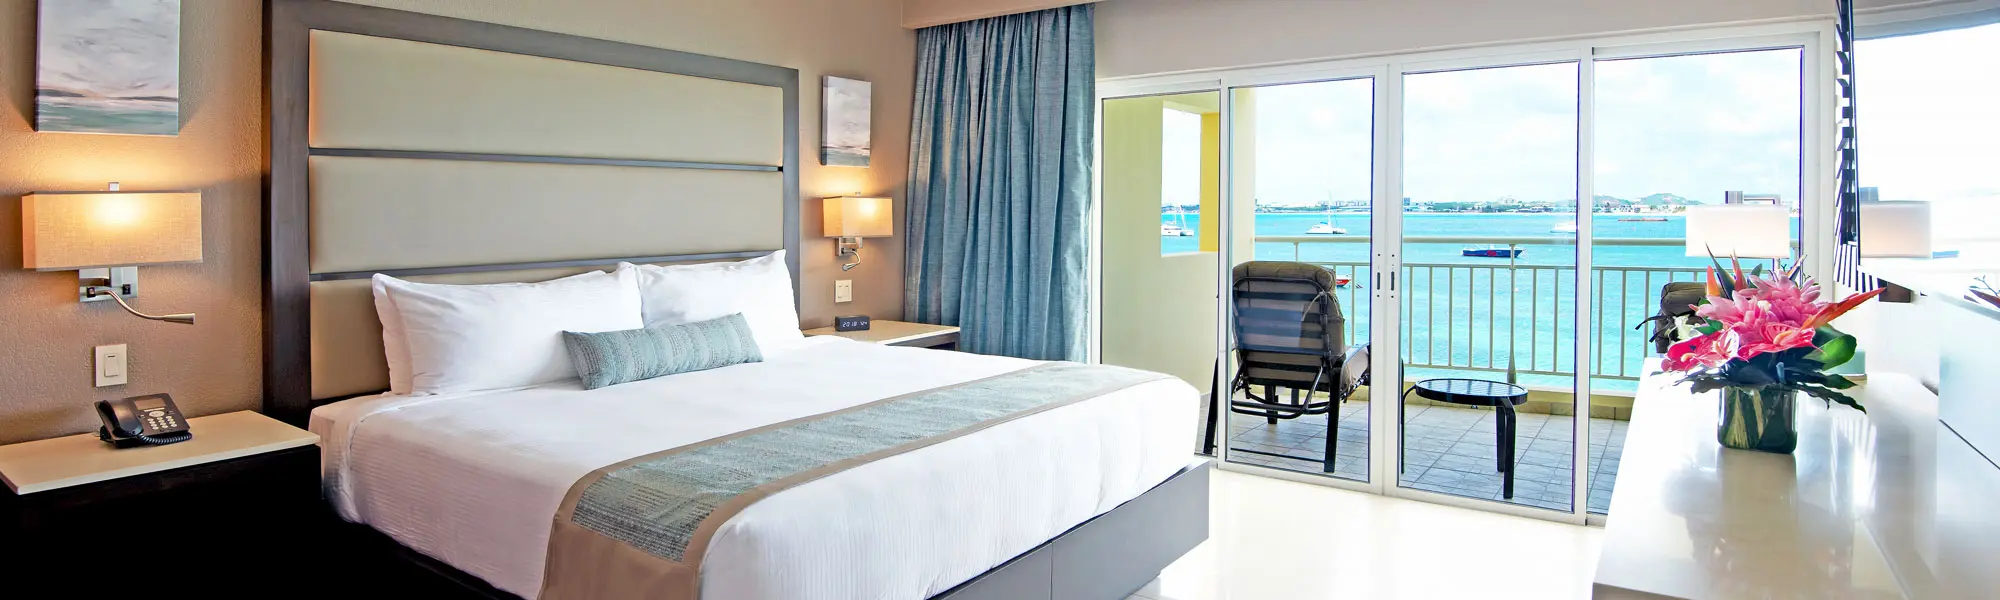 One Bedroom Suite Ocean View, St. Maarten